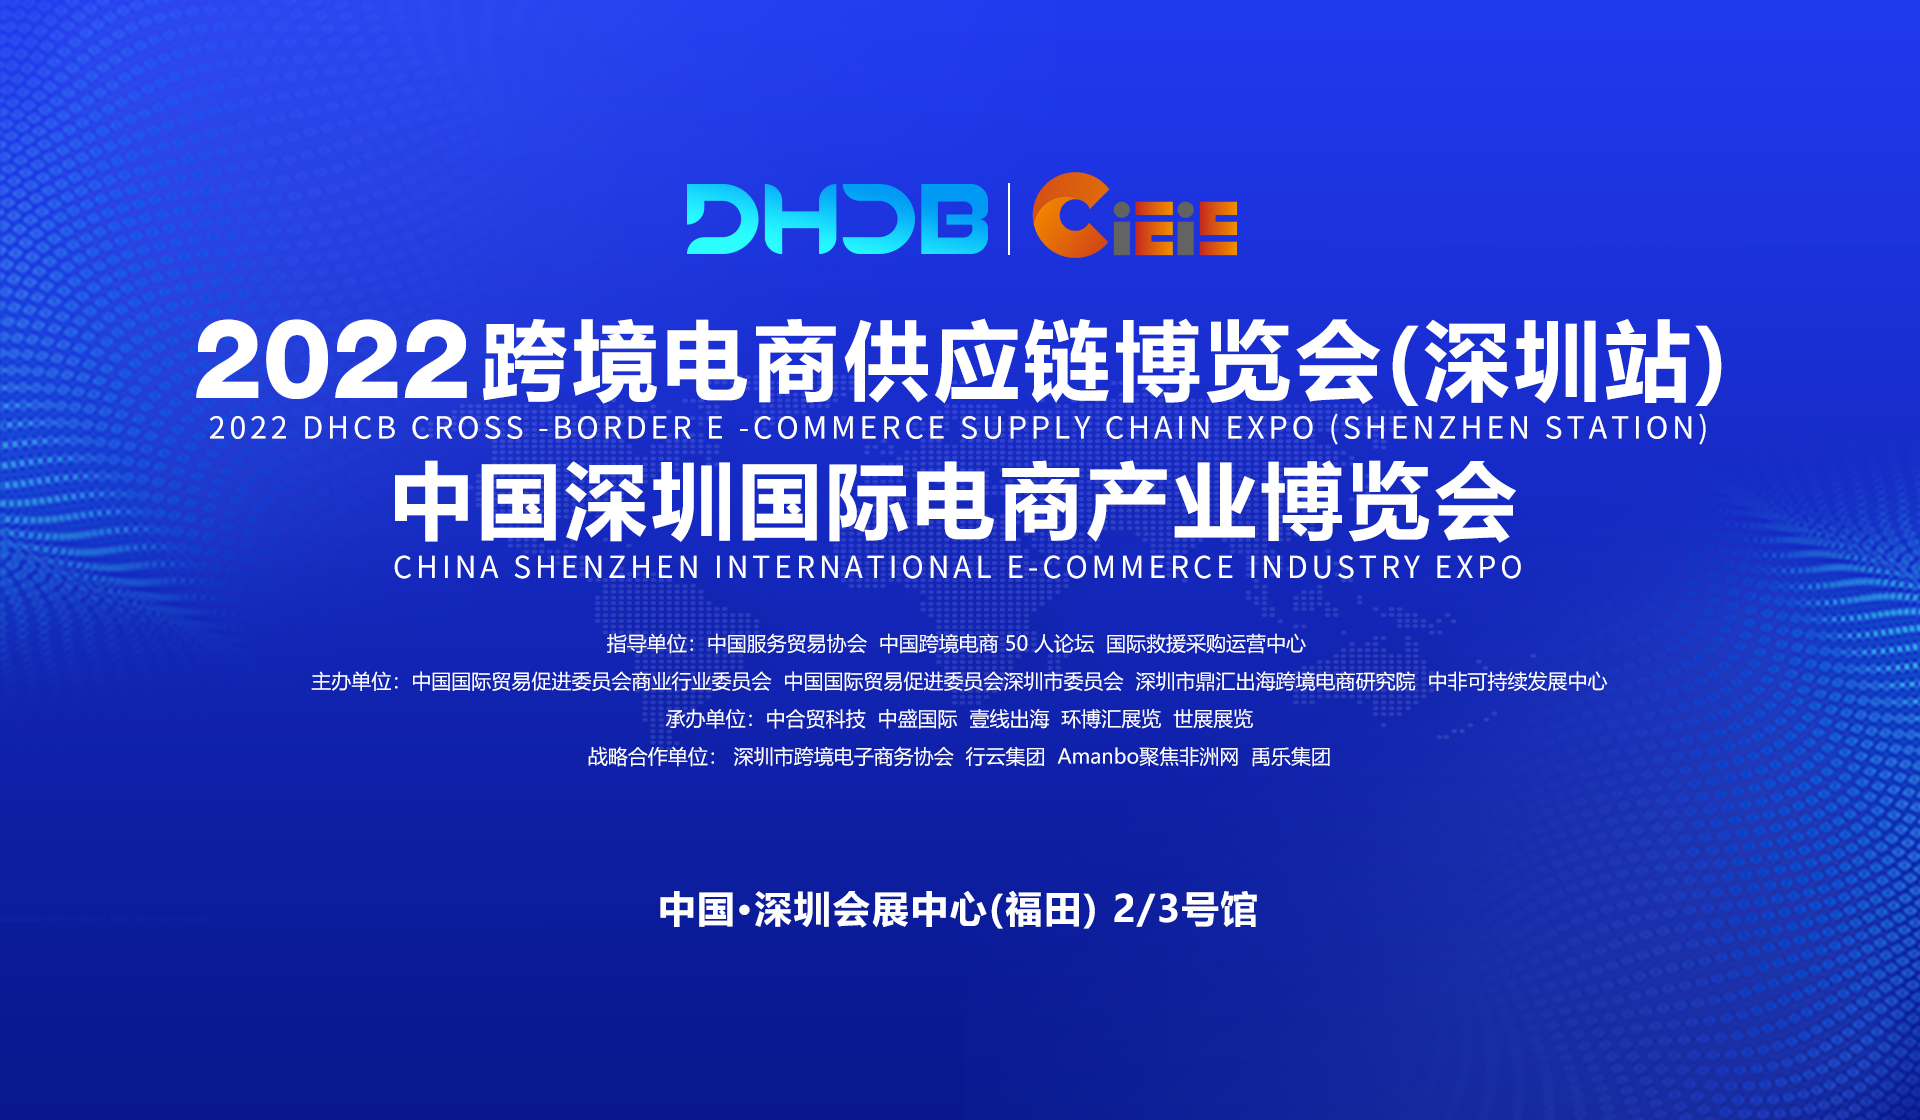 2022 DHCB 跨境电商供应链博览会